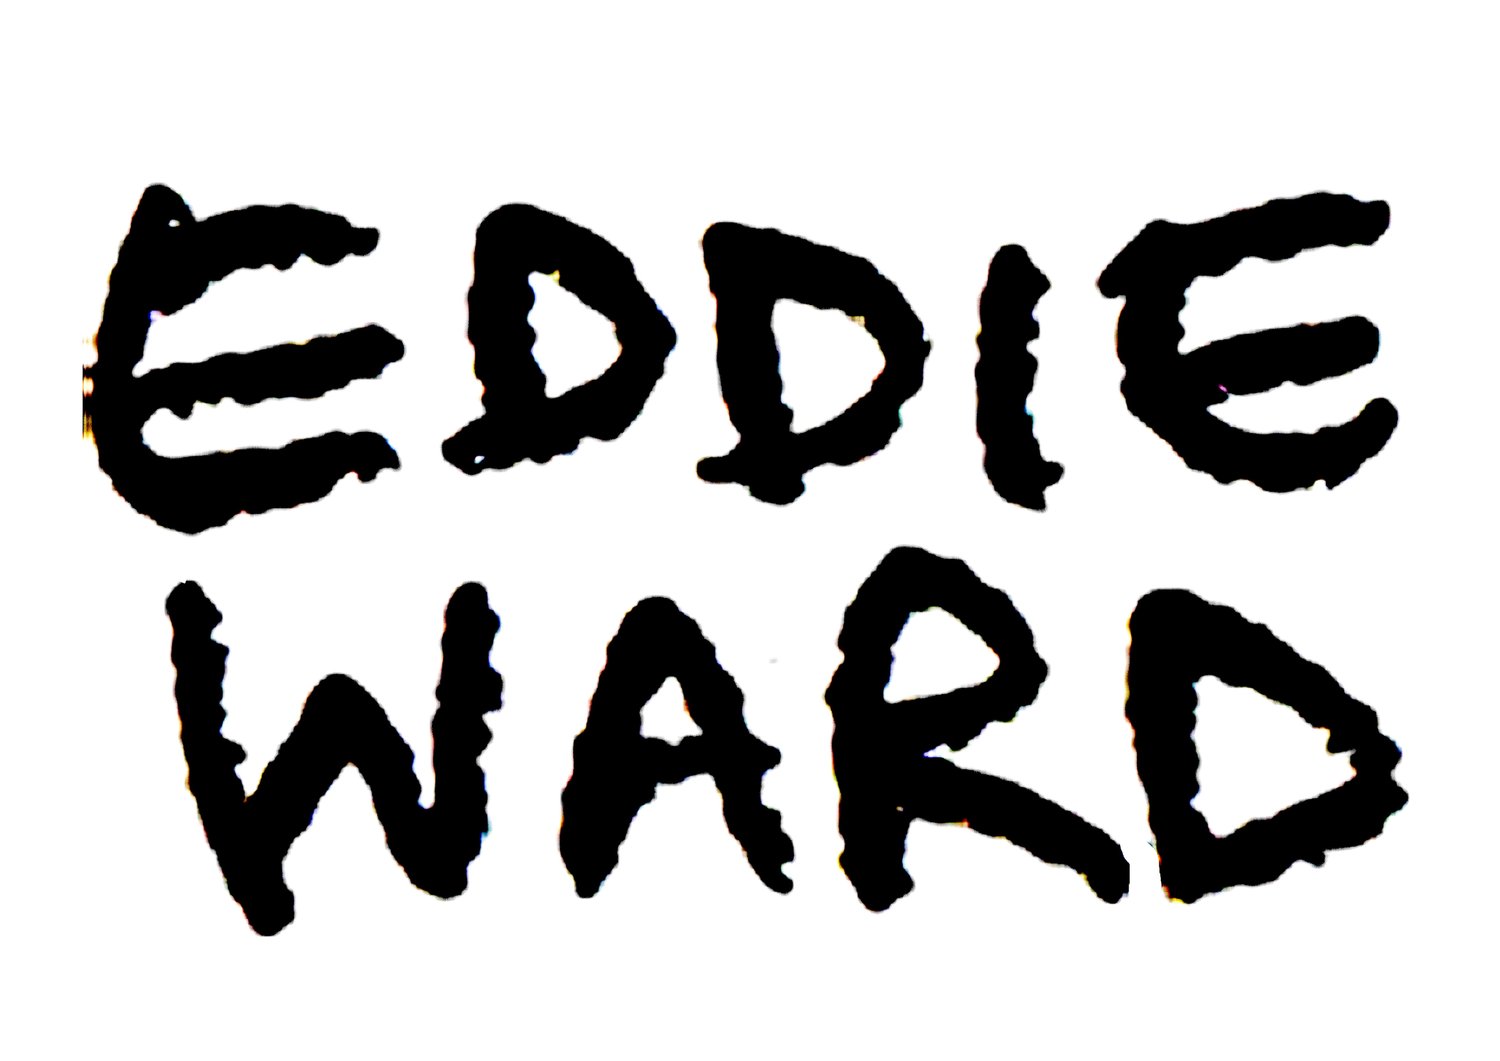 eddiewardart.com